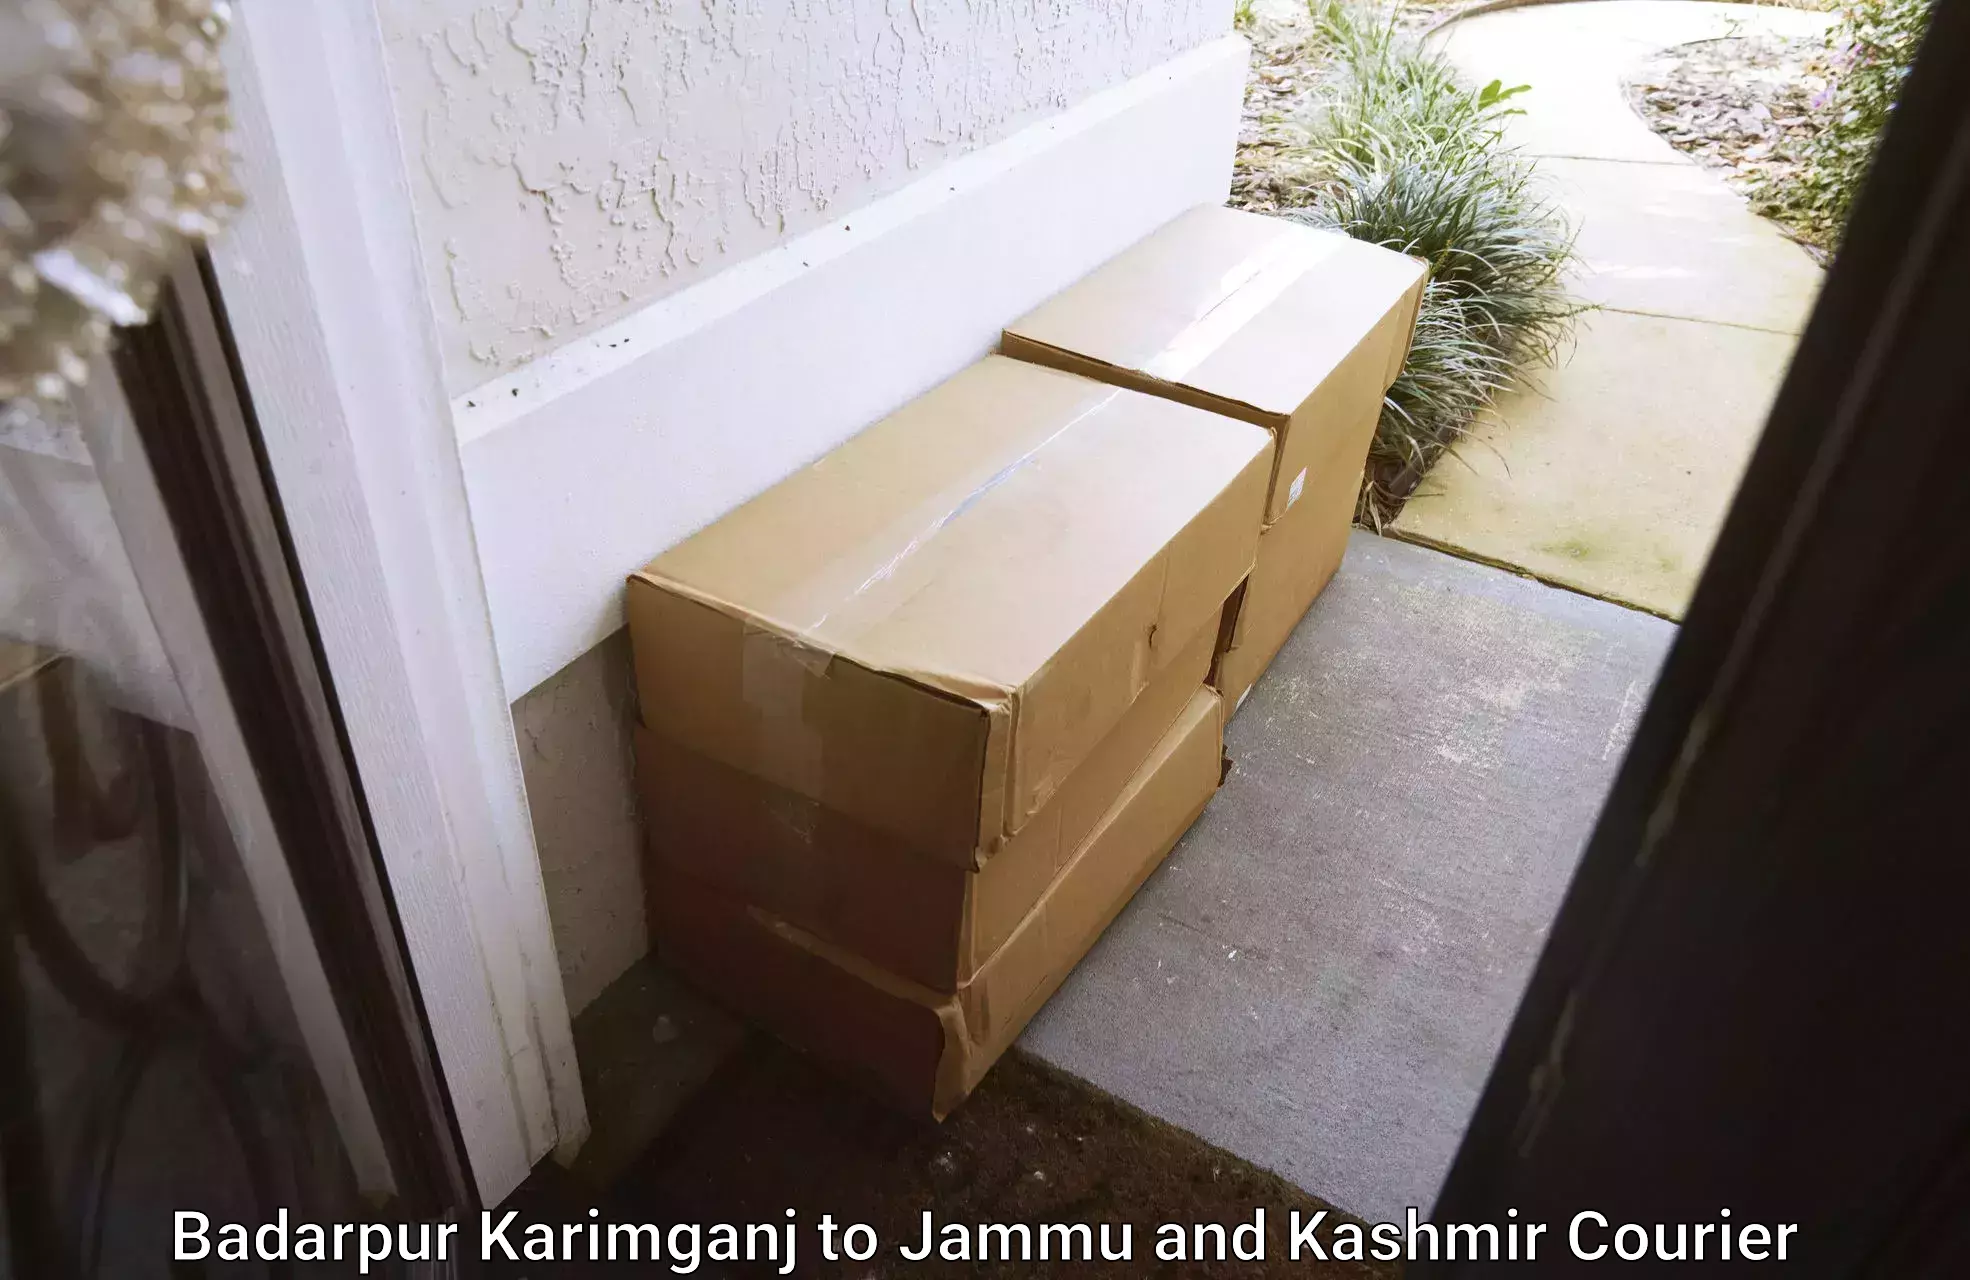 Affordable parcel service Badarpur Karimganj to Jammu and Kashmir